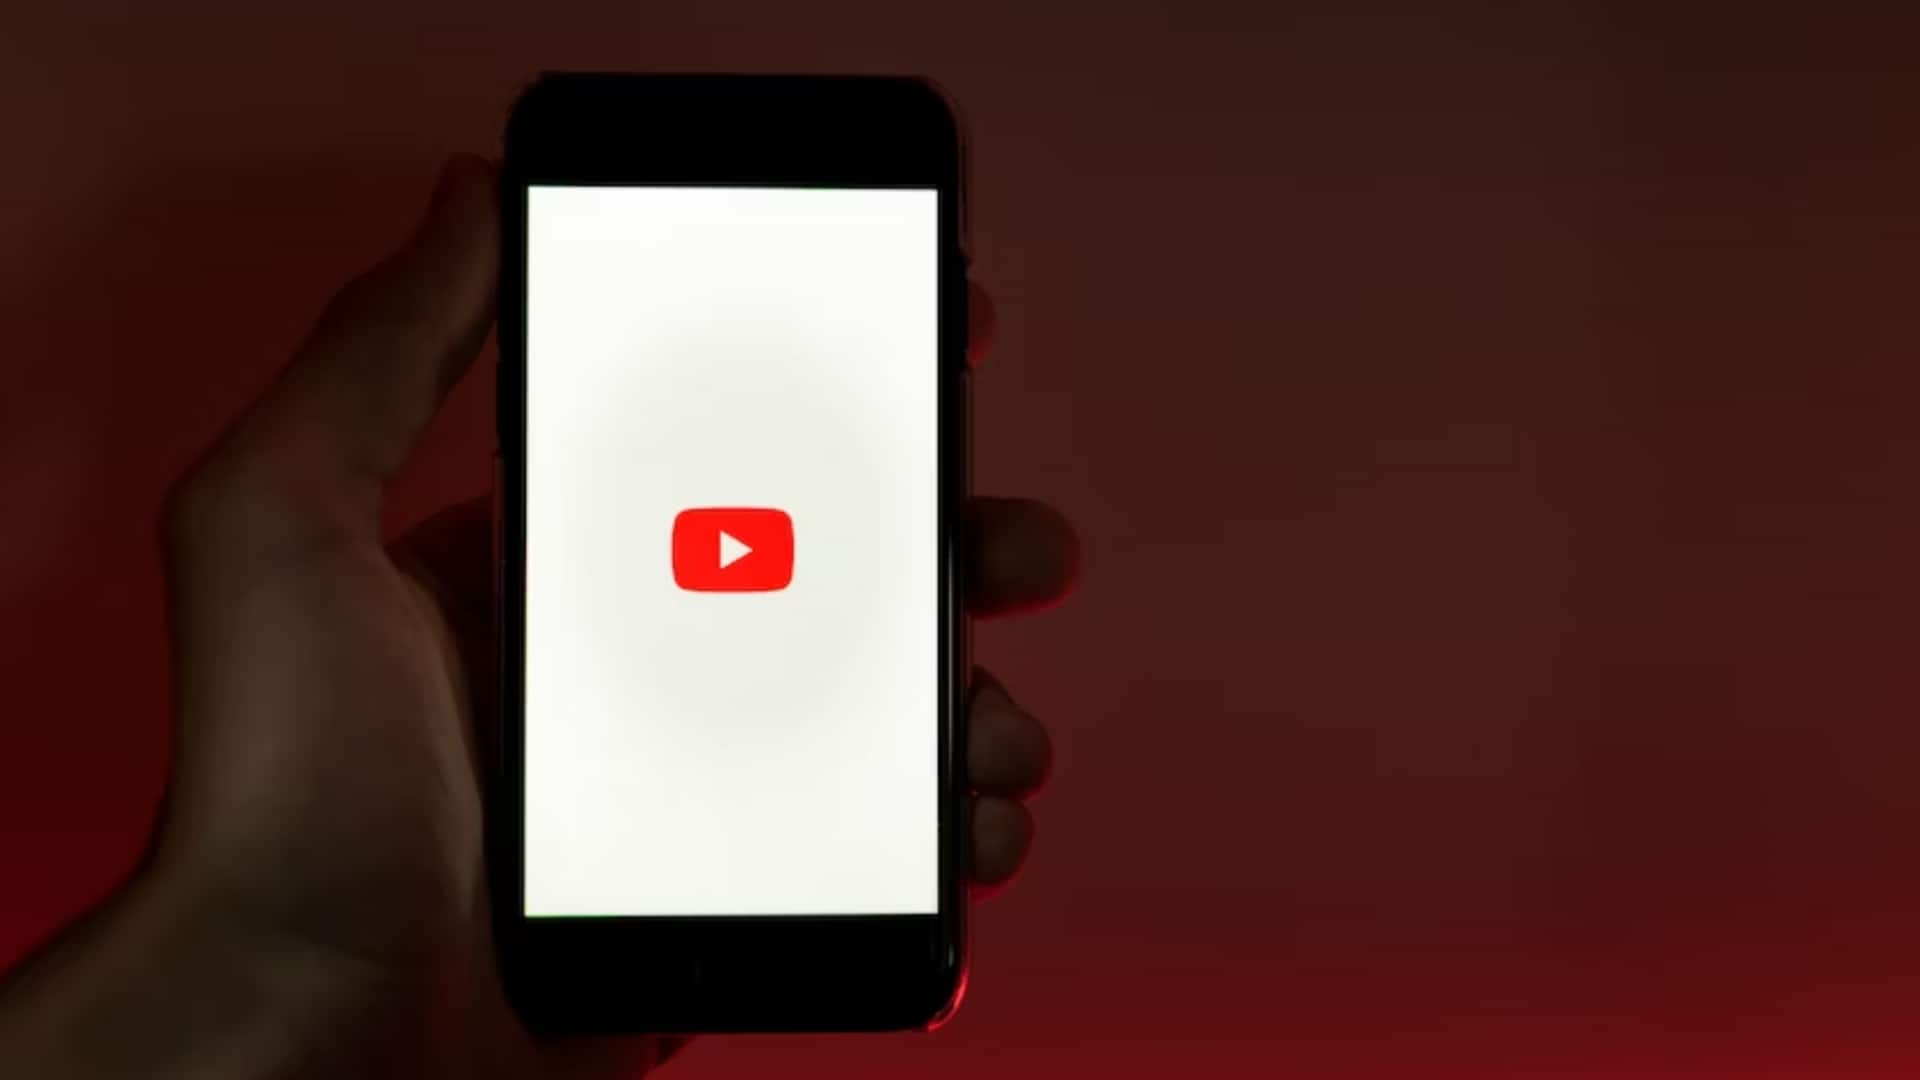 यूट्यूब का वीडियो सुझाव बच्चों को बंदूक से जुड़े वीडियो की तरफ धकेल रहा - रिपोर्ट